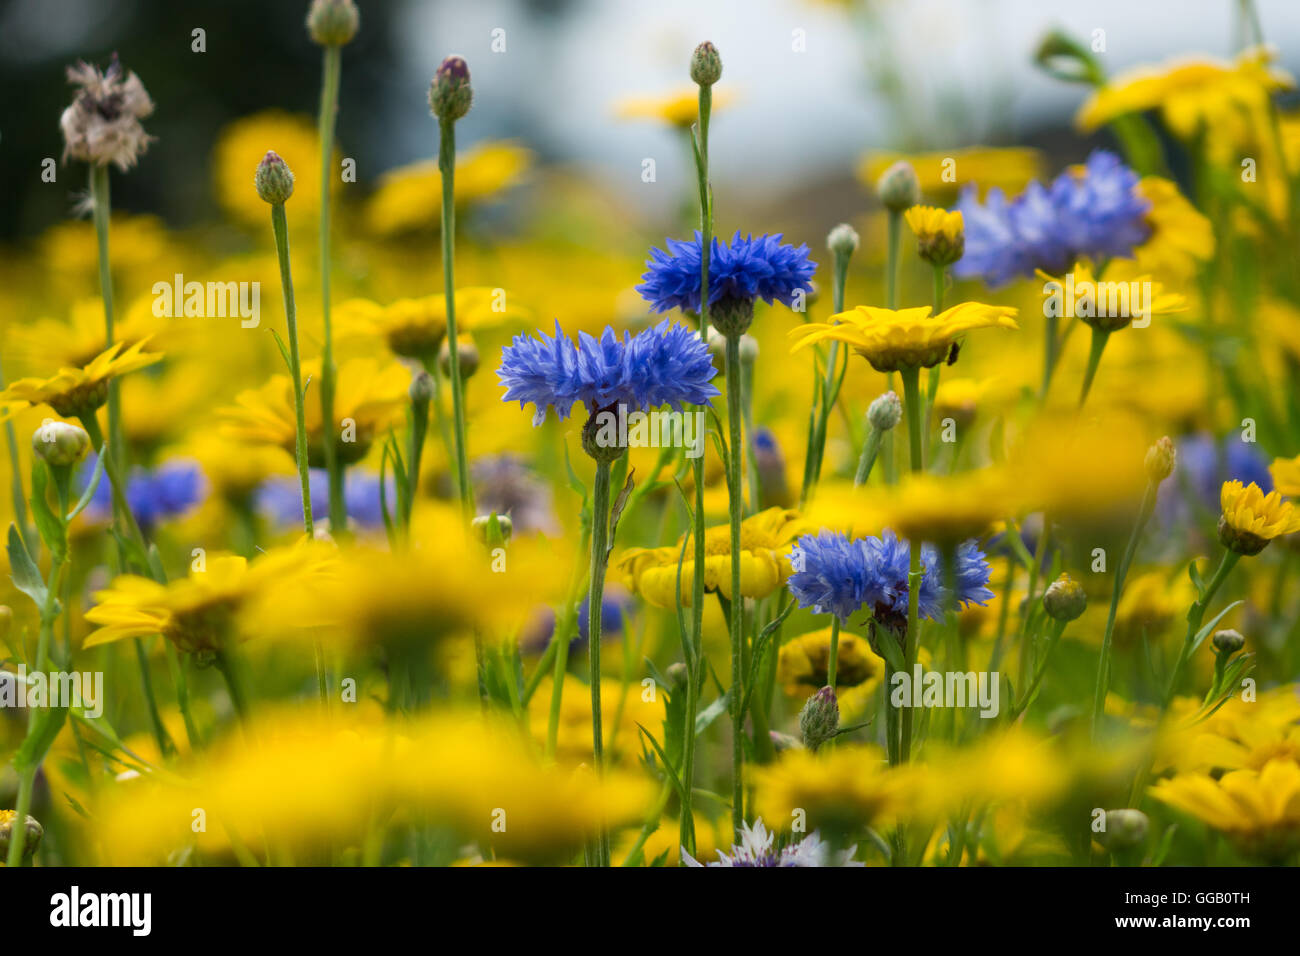 Bleuet bleu jaune dans un champ de fleurs sauvages Photo Stock - Alamy